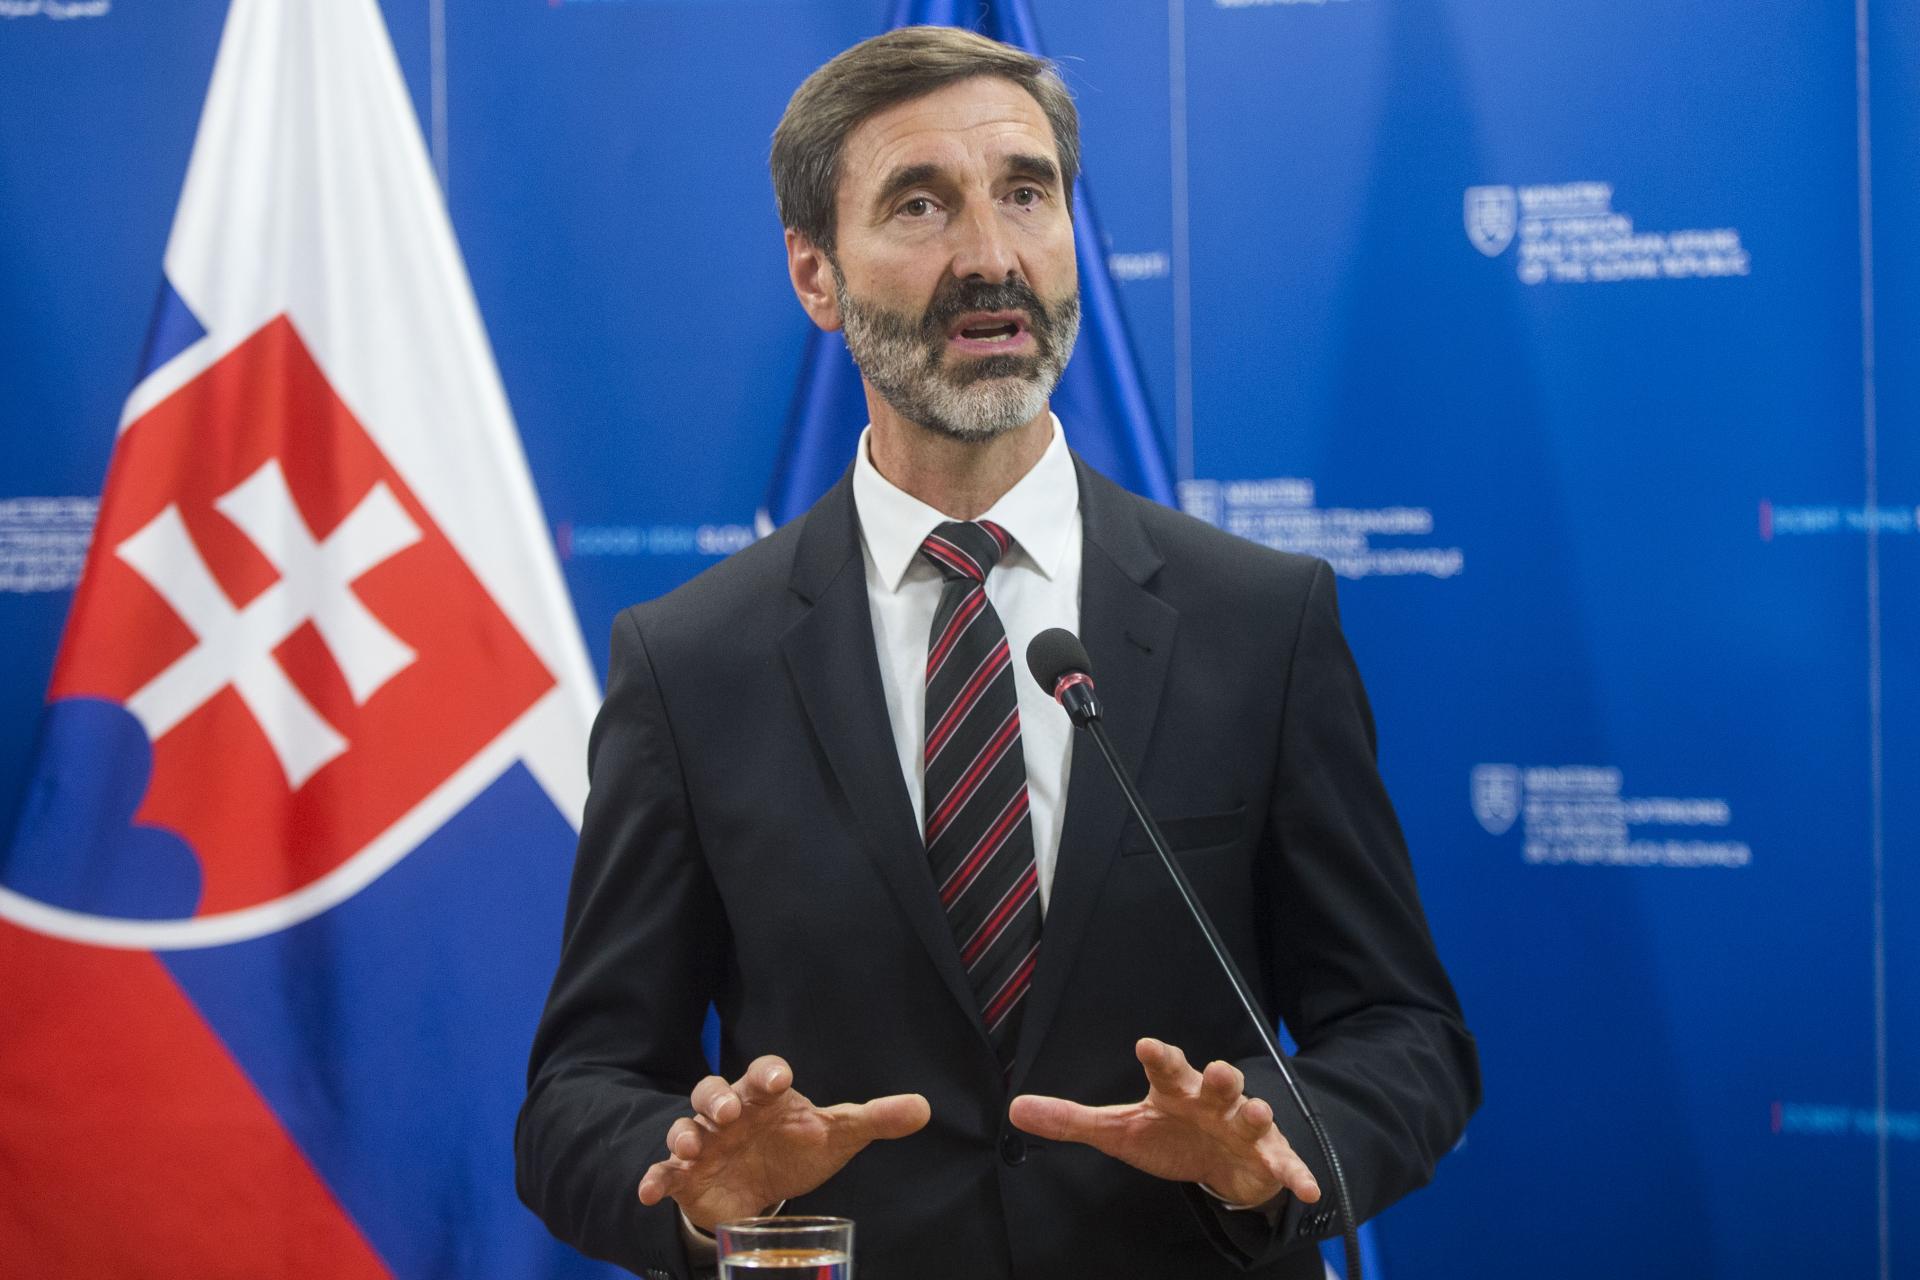 V zahraničnej politike musíme brať do úvahy národno-štátne záujmy Slovenska, tvrdí Blanár